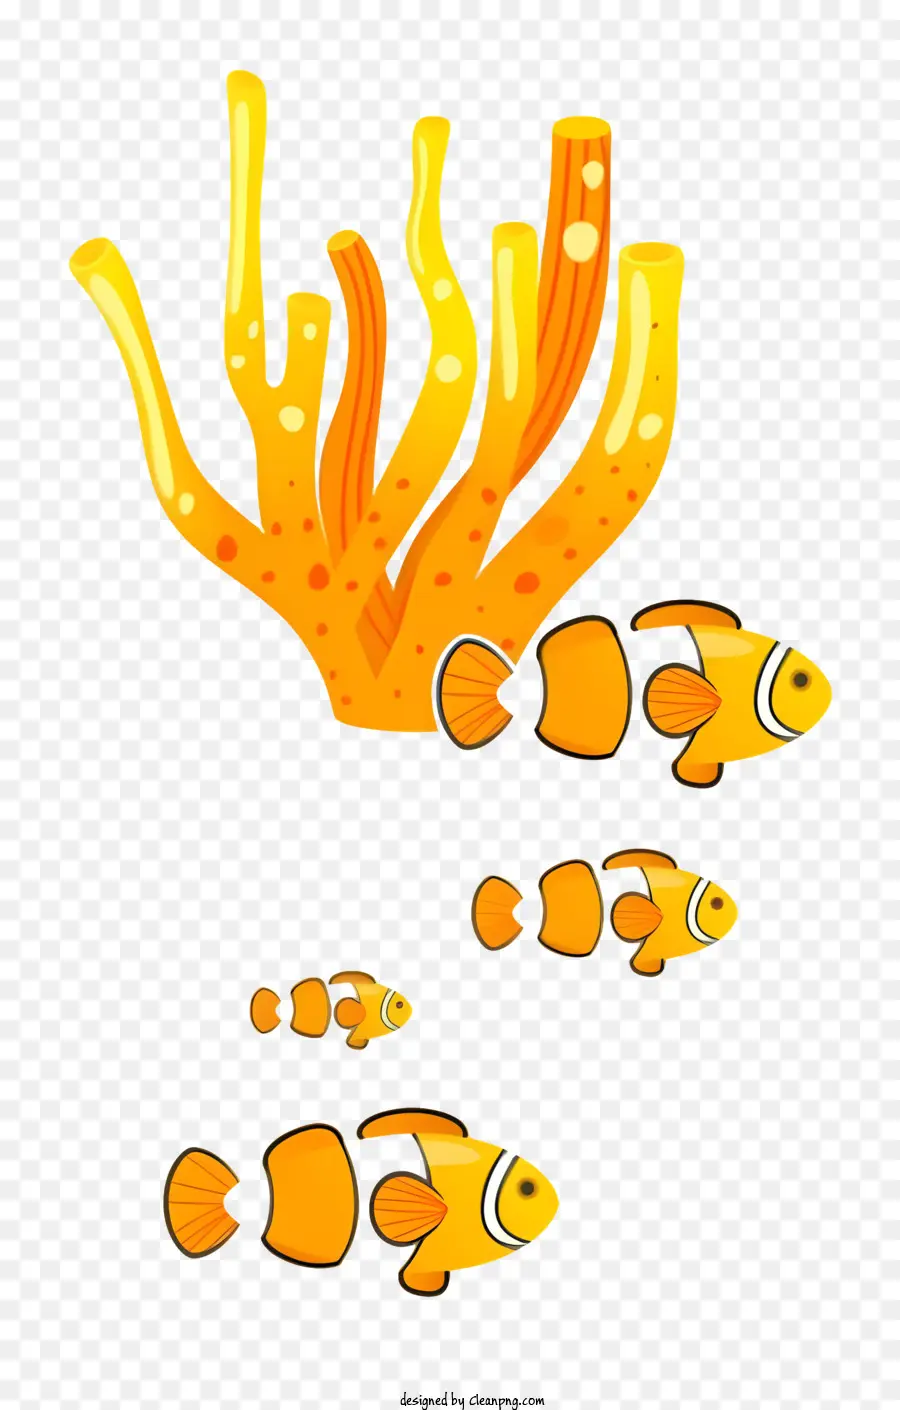 icona piccola pesce anemone oceano tentacolo - Pesce nuotare vicino ad anemone con lungo tentacolo